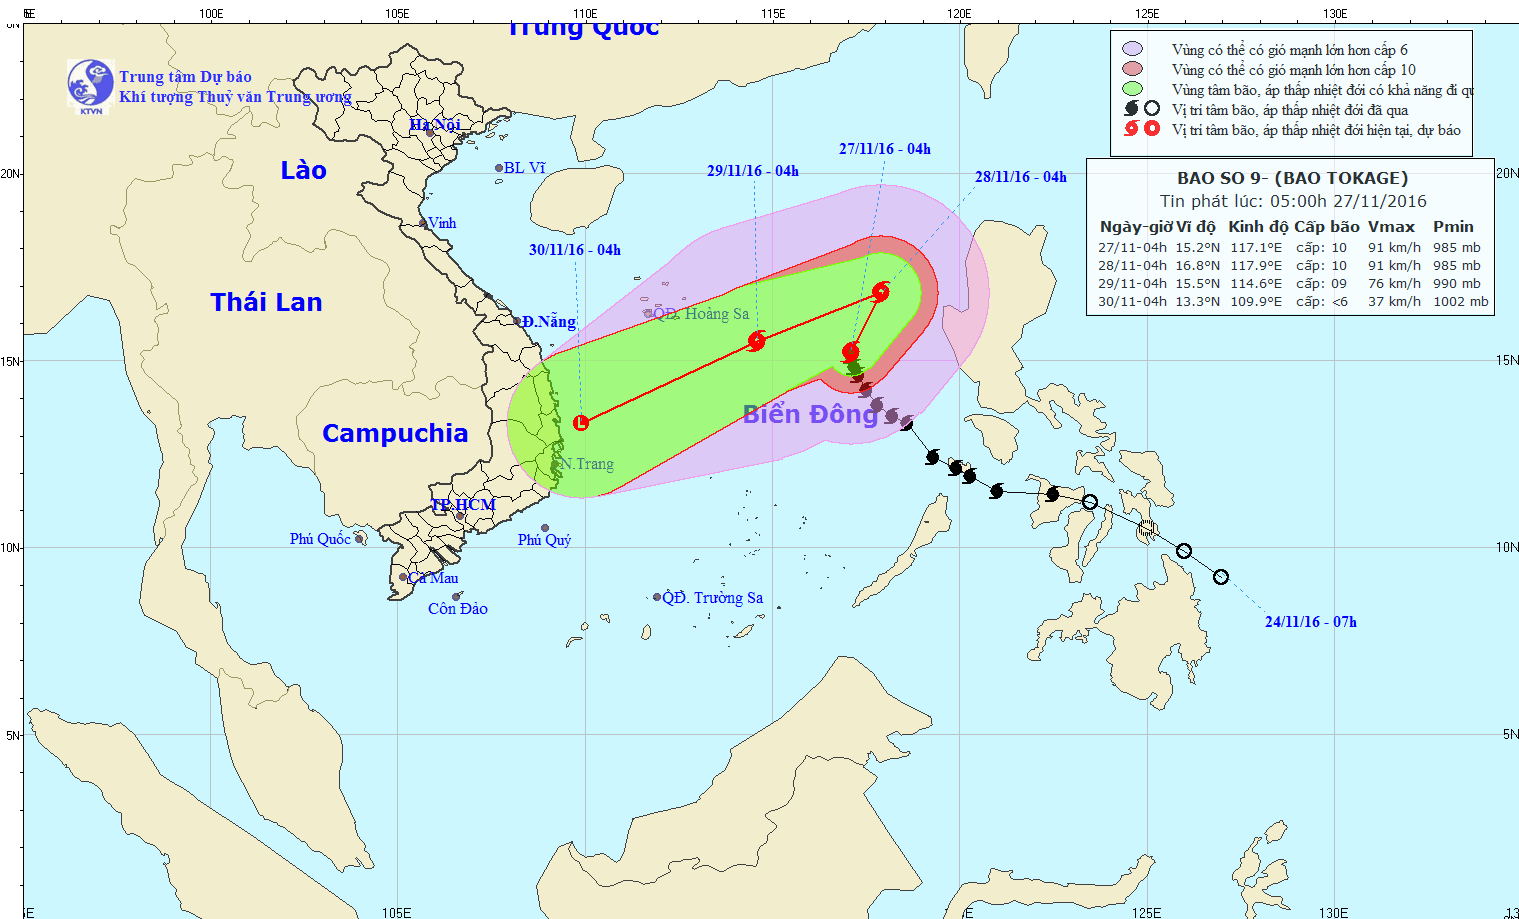 Tin bão trên biển Đông (Cơn bão số 9) lúc 05h00 ngày 27/11/2016